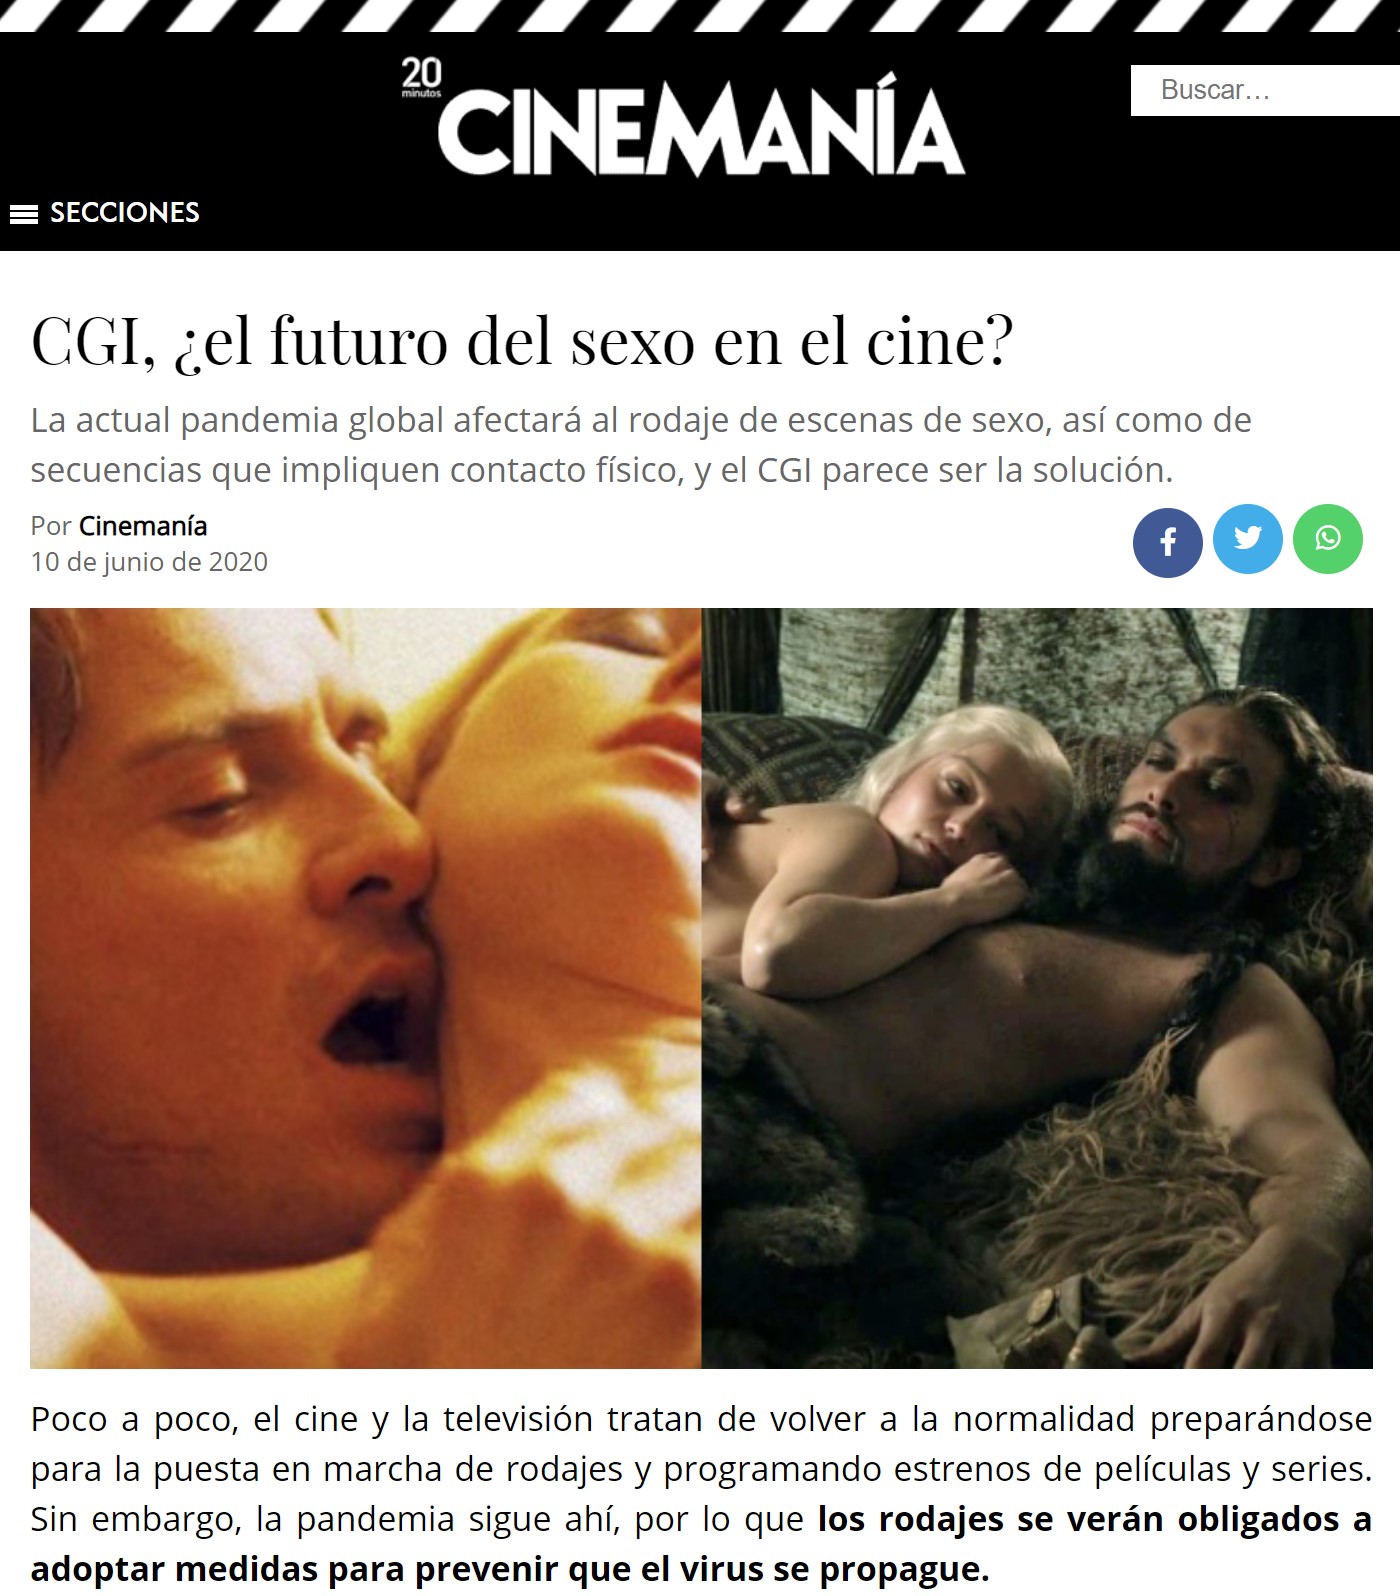 CGI, la nueva normalidad de los encuentros secsuales en el cine